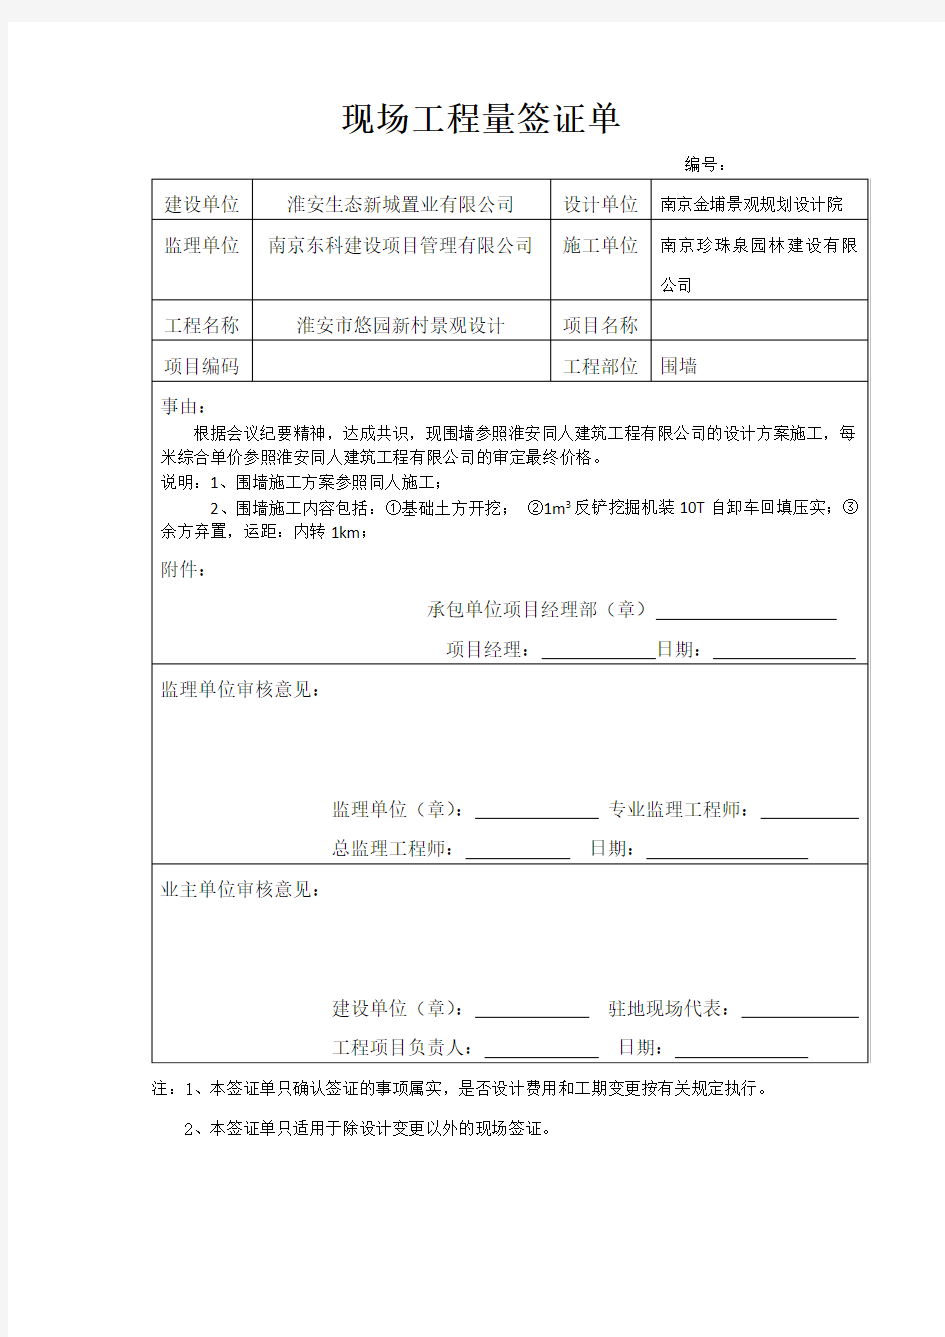 (完整版)现场工程量签证单2018年江苏